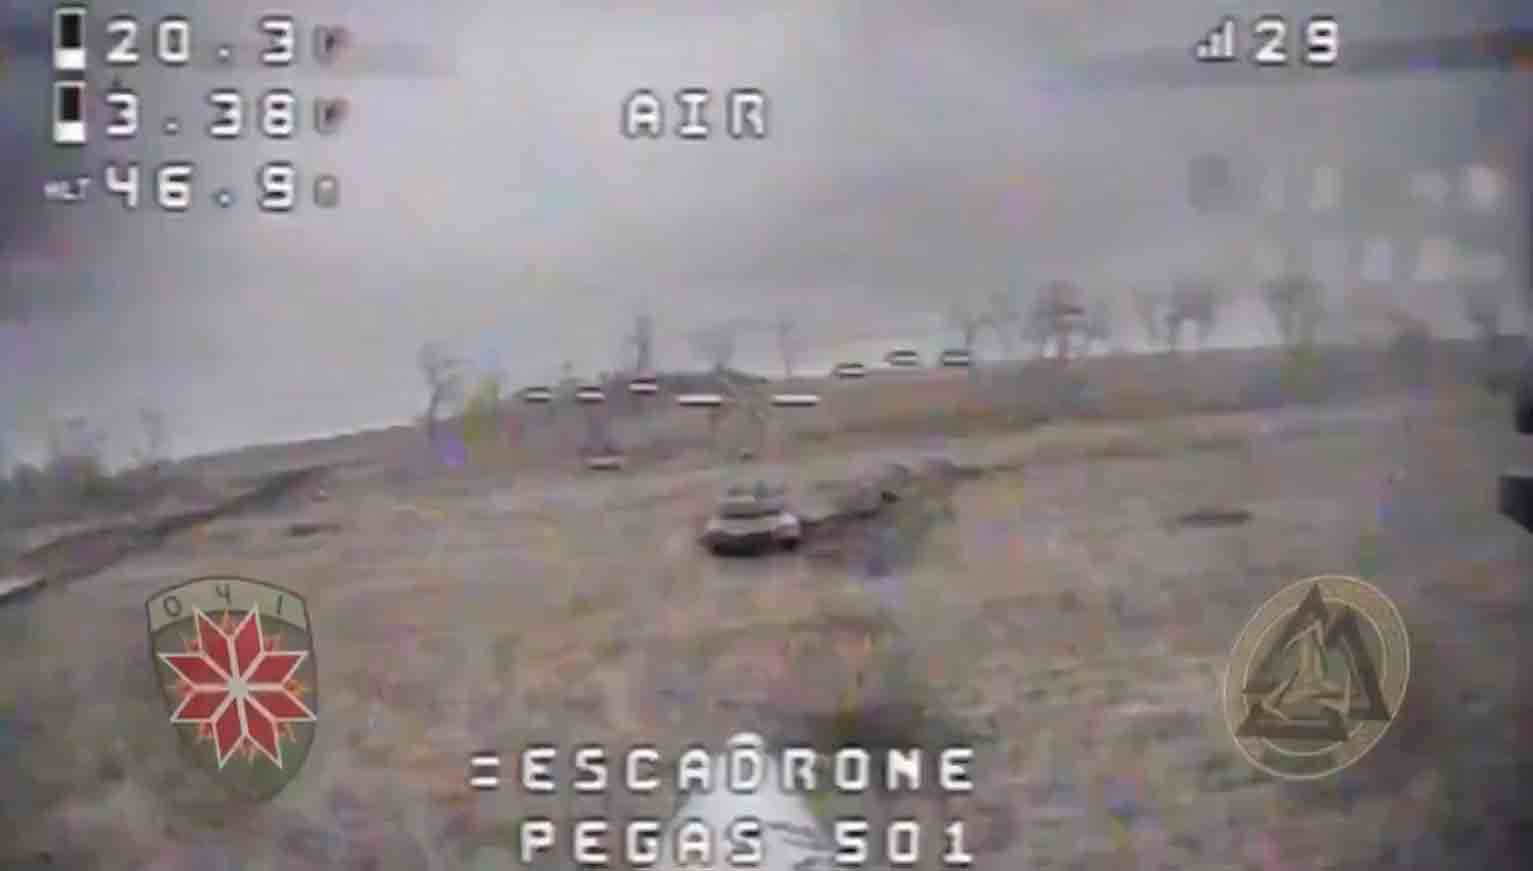 रूस की सबसे उन्नत टैंक को यूक्रेनी ड्रोन द्वारा तबाह होते हुए वीडियो. फोटो और वीडियो: Twitter @@DefenceU